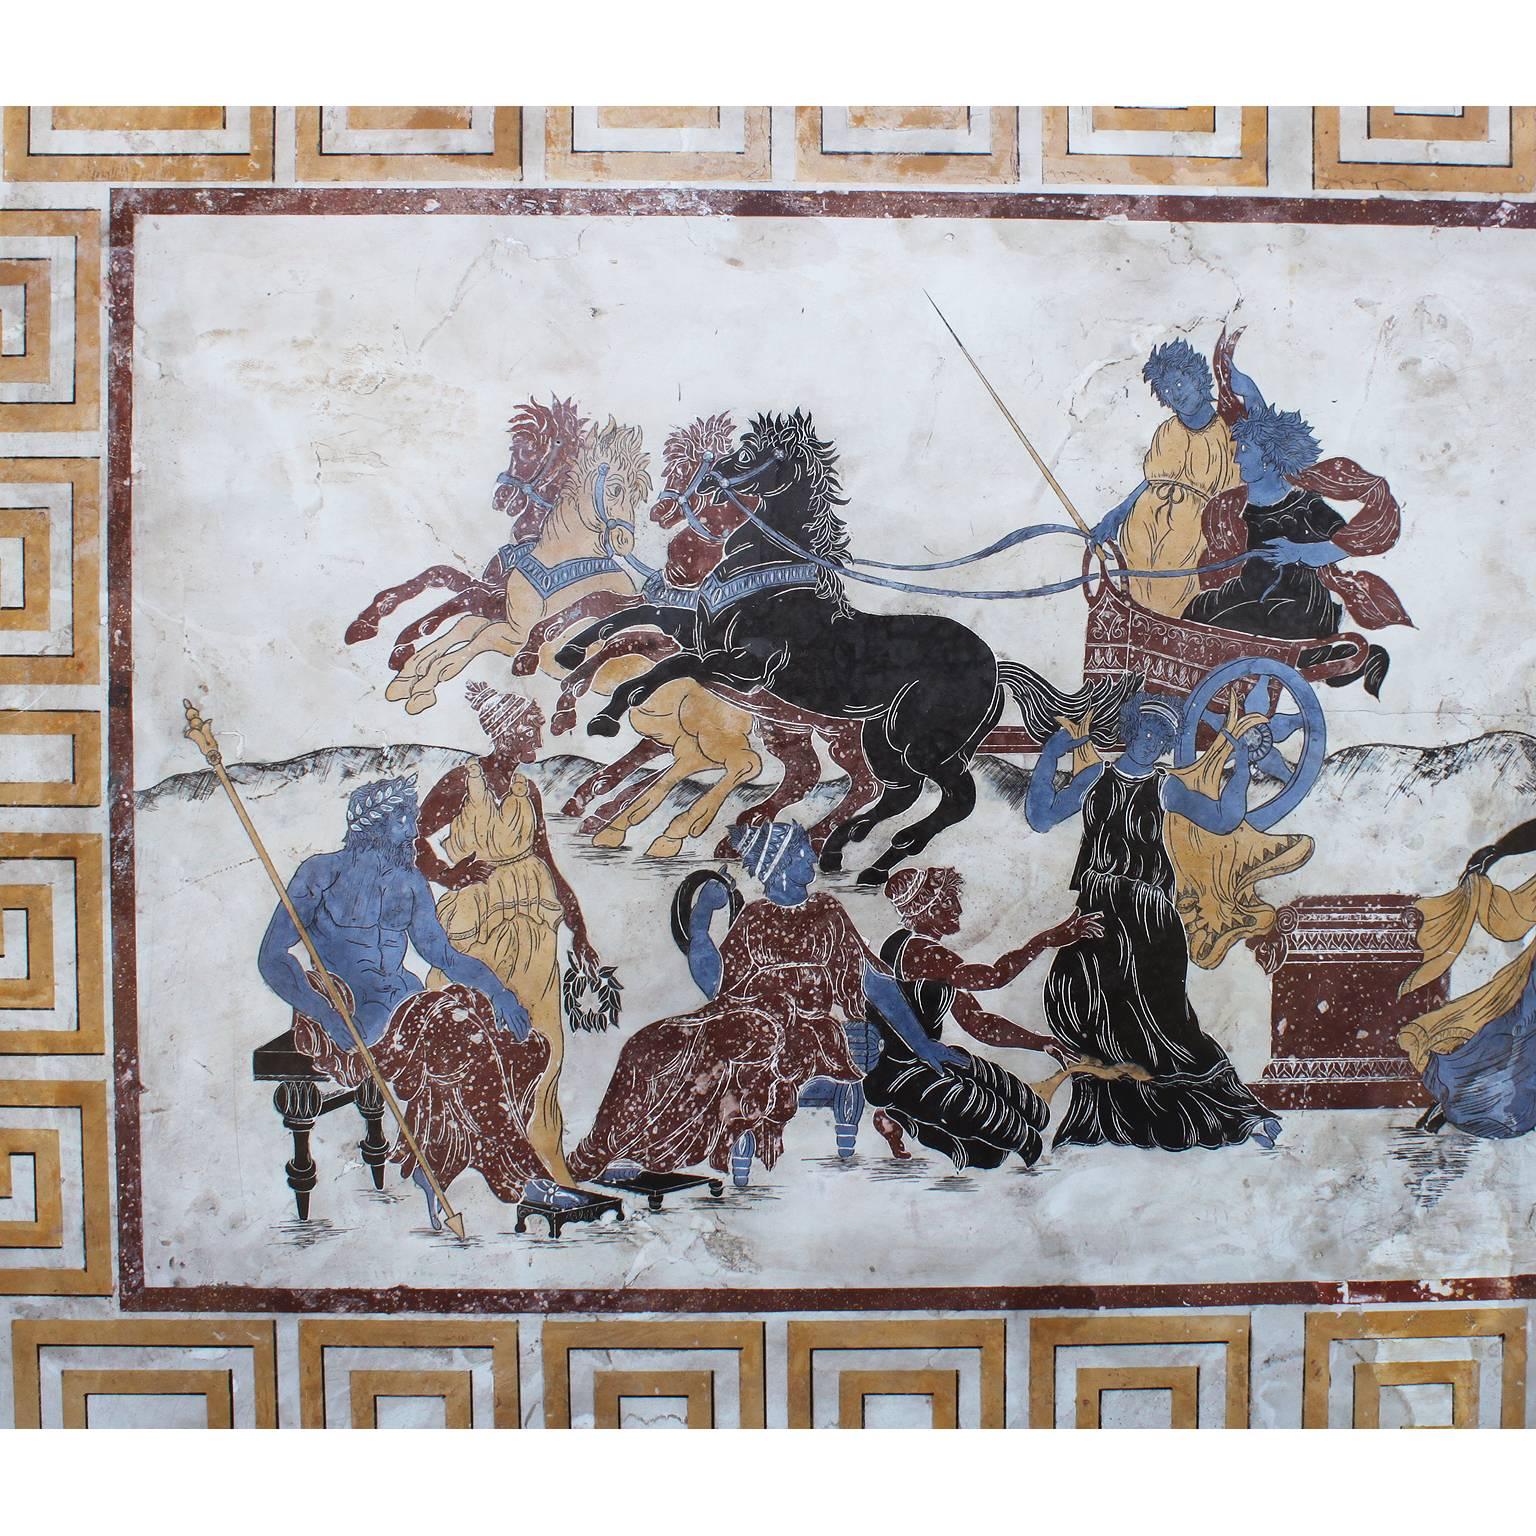 Grande plaque murale italienne de style néoclassique et gréco-romain du 19e au 20e siècle, représentant des chars, des chevaux, des jeunes filles allégoriques et des dieux, incrustée et peinte en porphyre impérial, sienne et autres pierres et